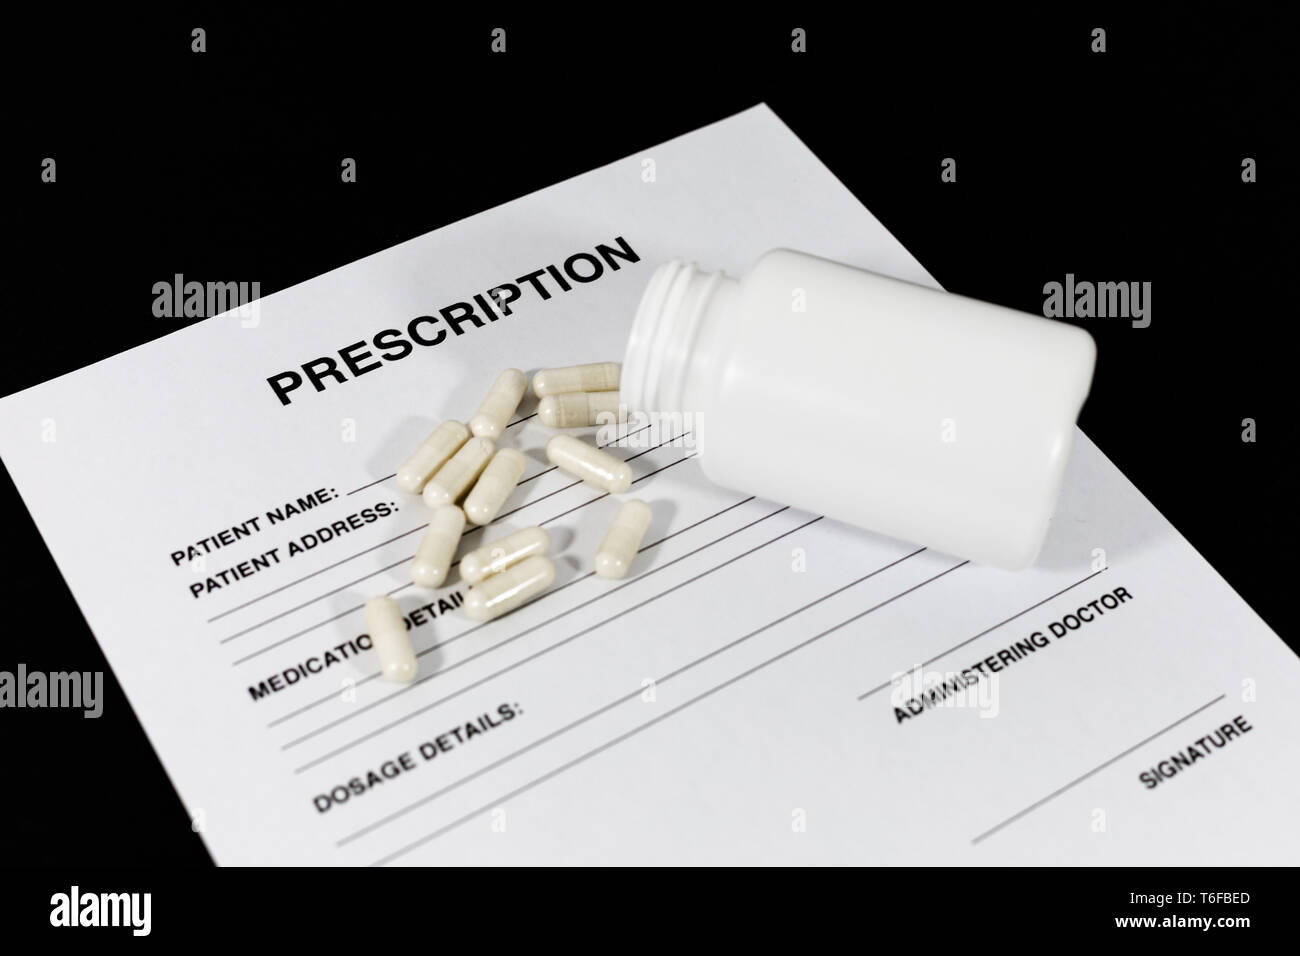 Simulazione di prescrizione con pillole e una bottiglia, un concetto per la salute, tossicodipendenza, vitamine e integratori, médicale piuttosto che evitare Foto Stock